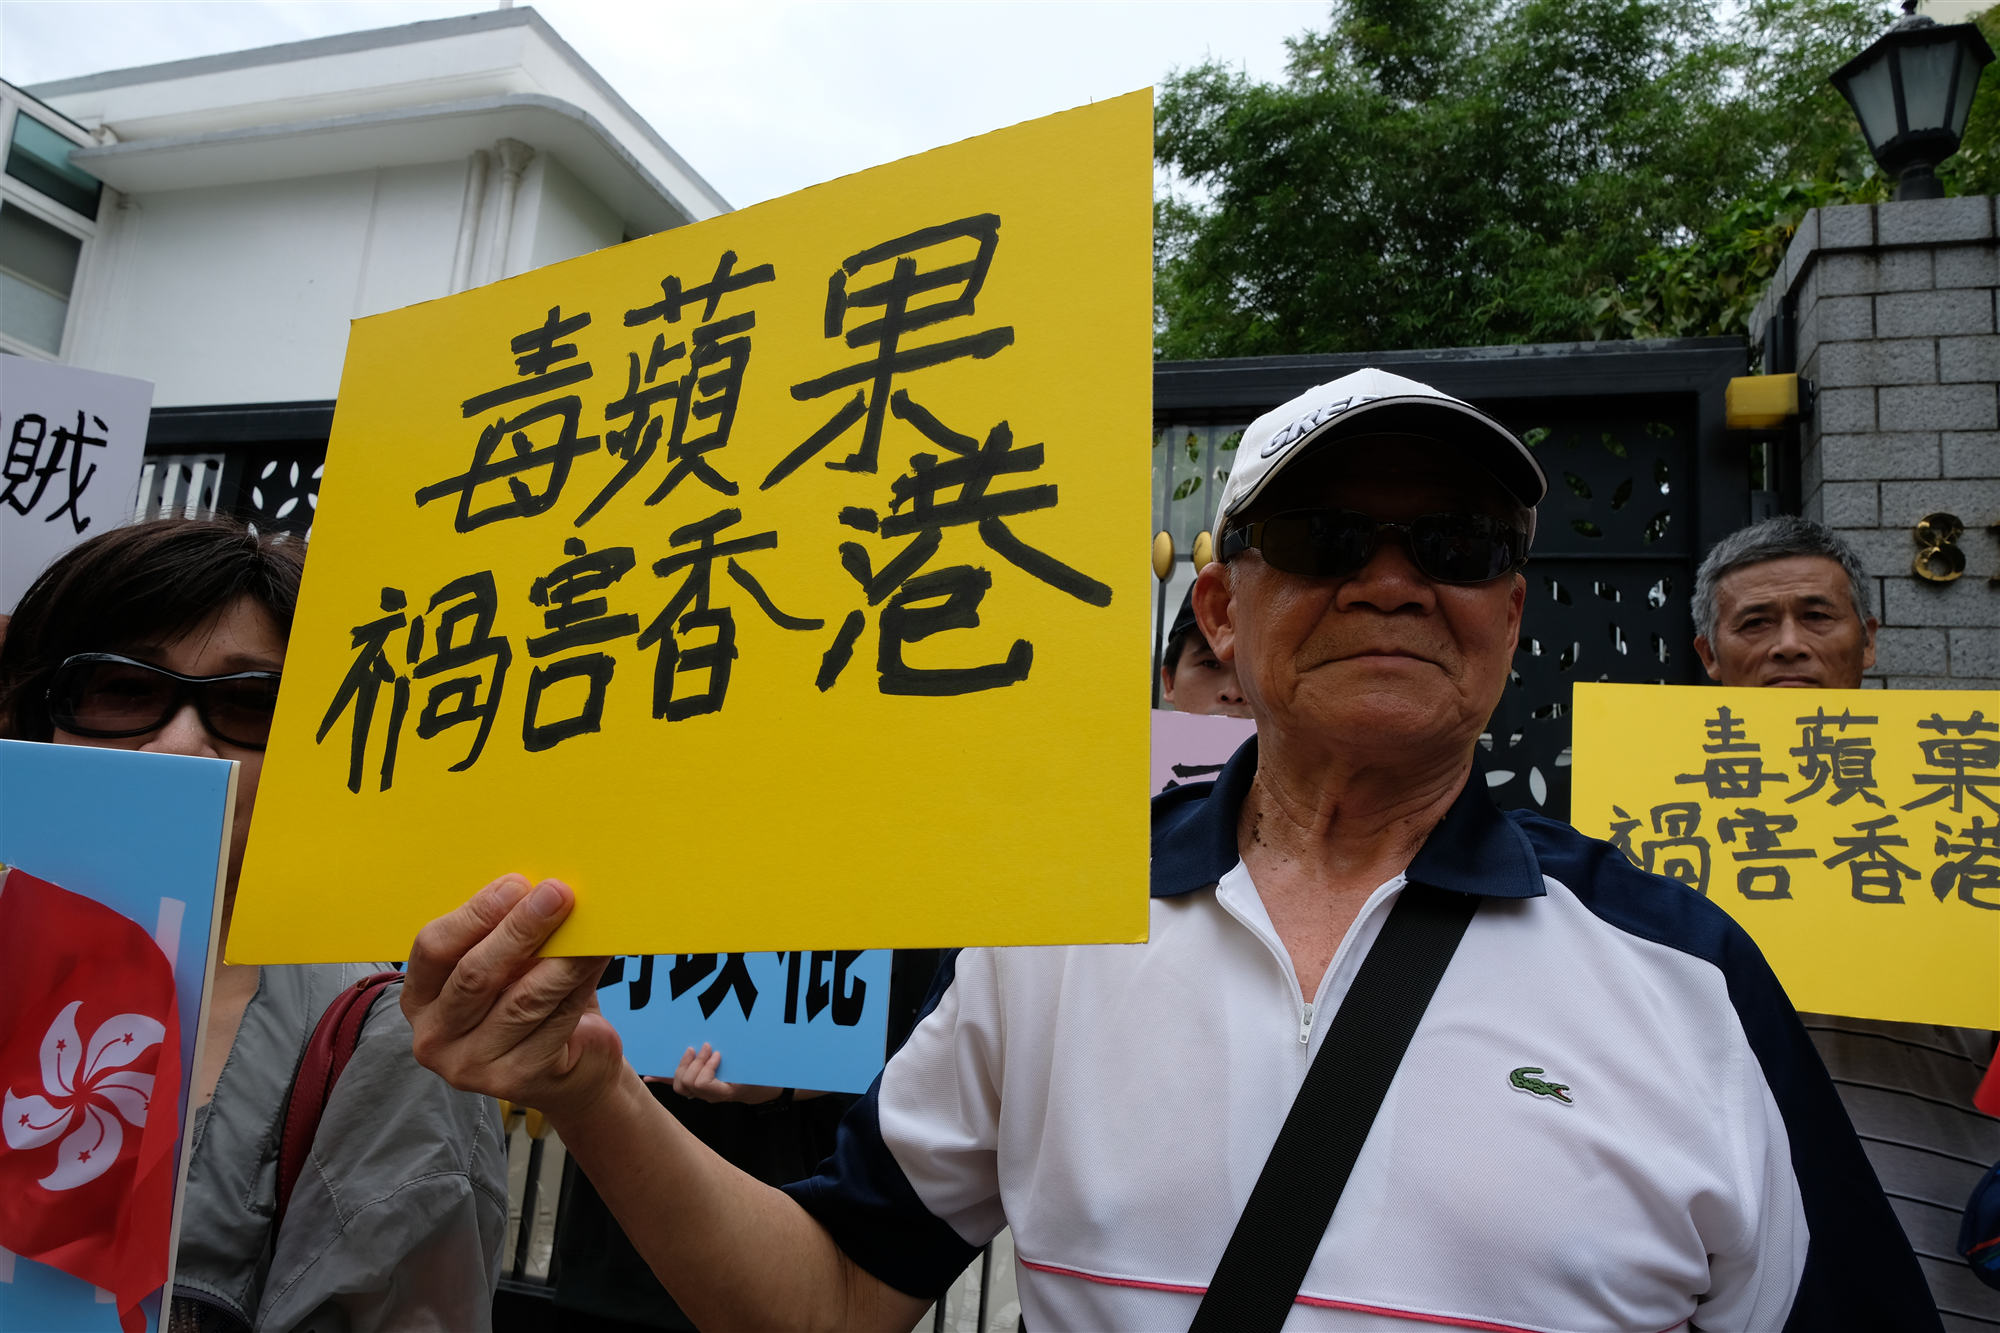 黎智英宅外市民抗議 怒斥「賣國賊」搞亂香港